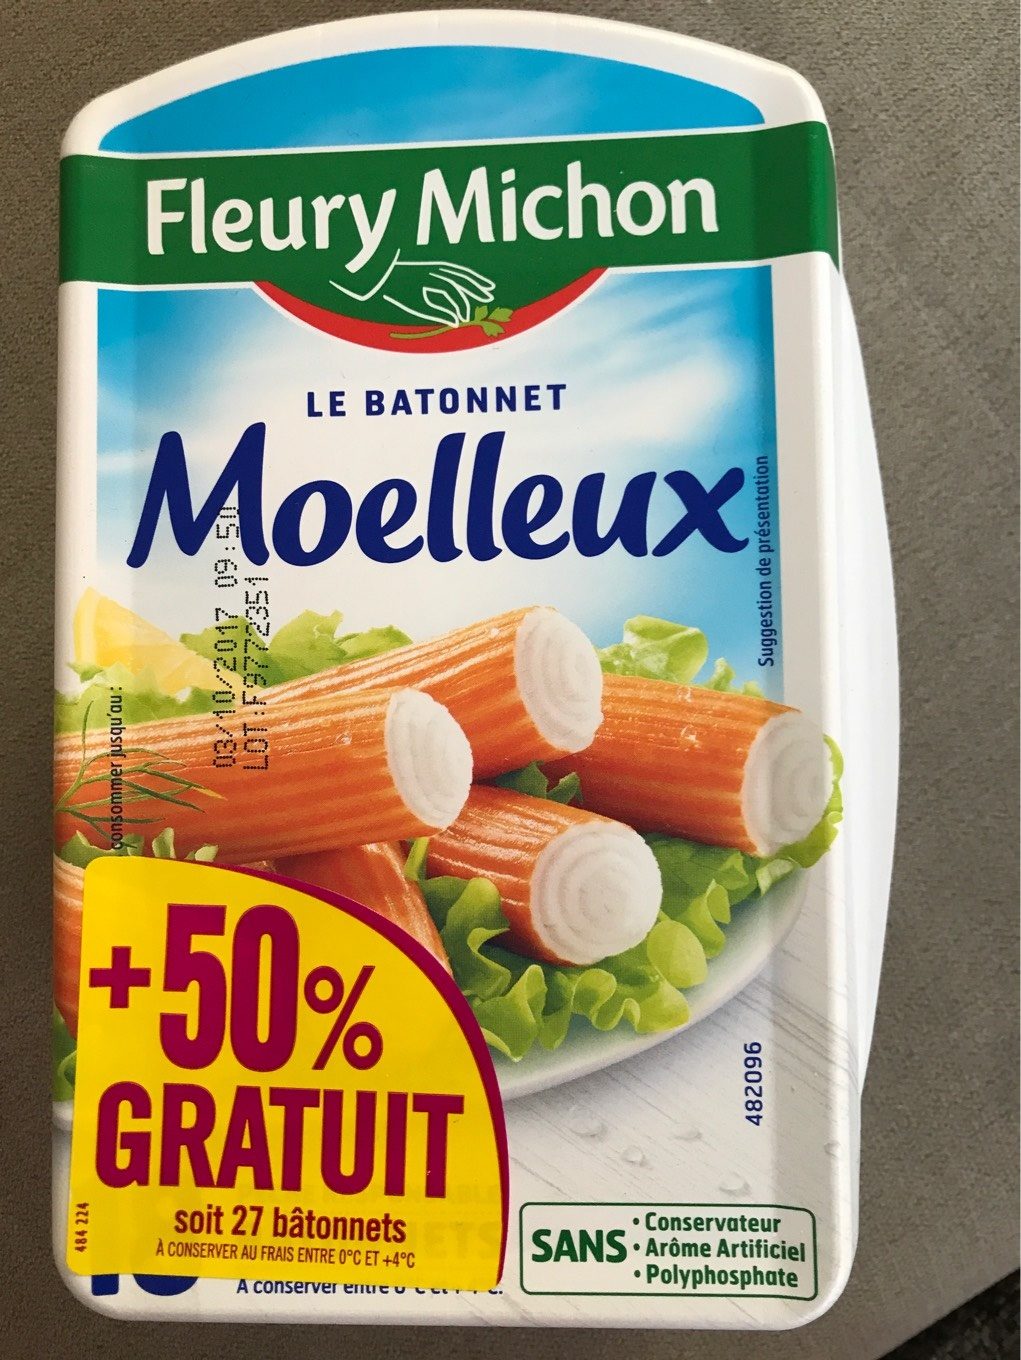 Le Bâtonnet Moelleux - Product - fr